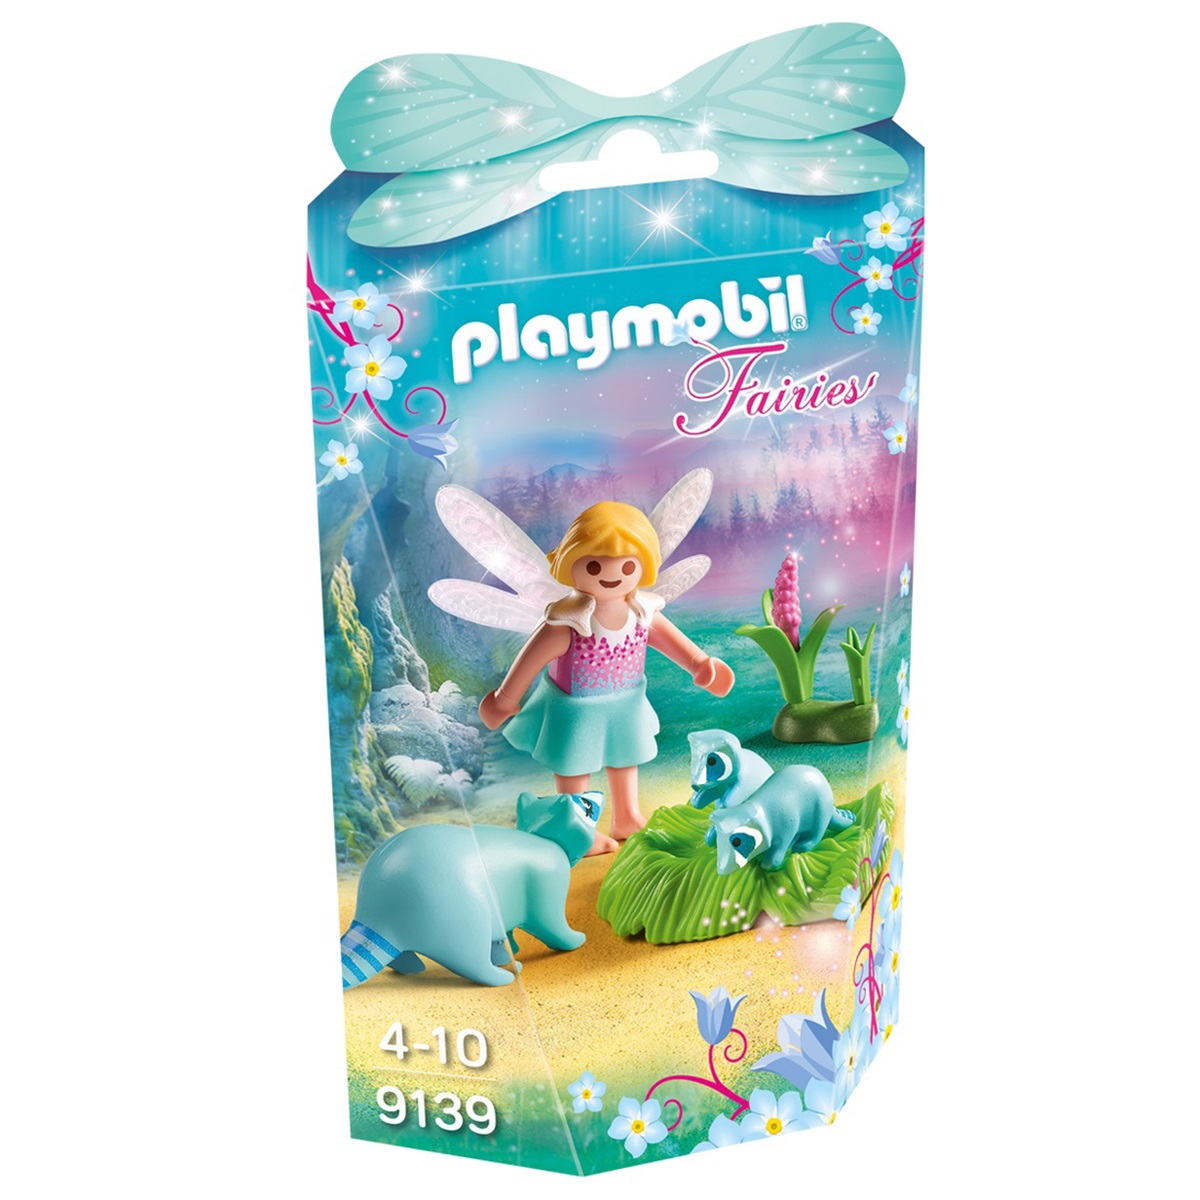 Playmobil Конструктор Девочка-фея с енотами 9139pm - фото 1